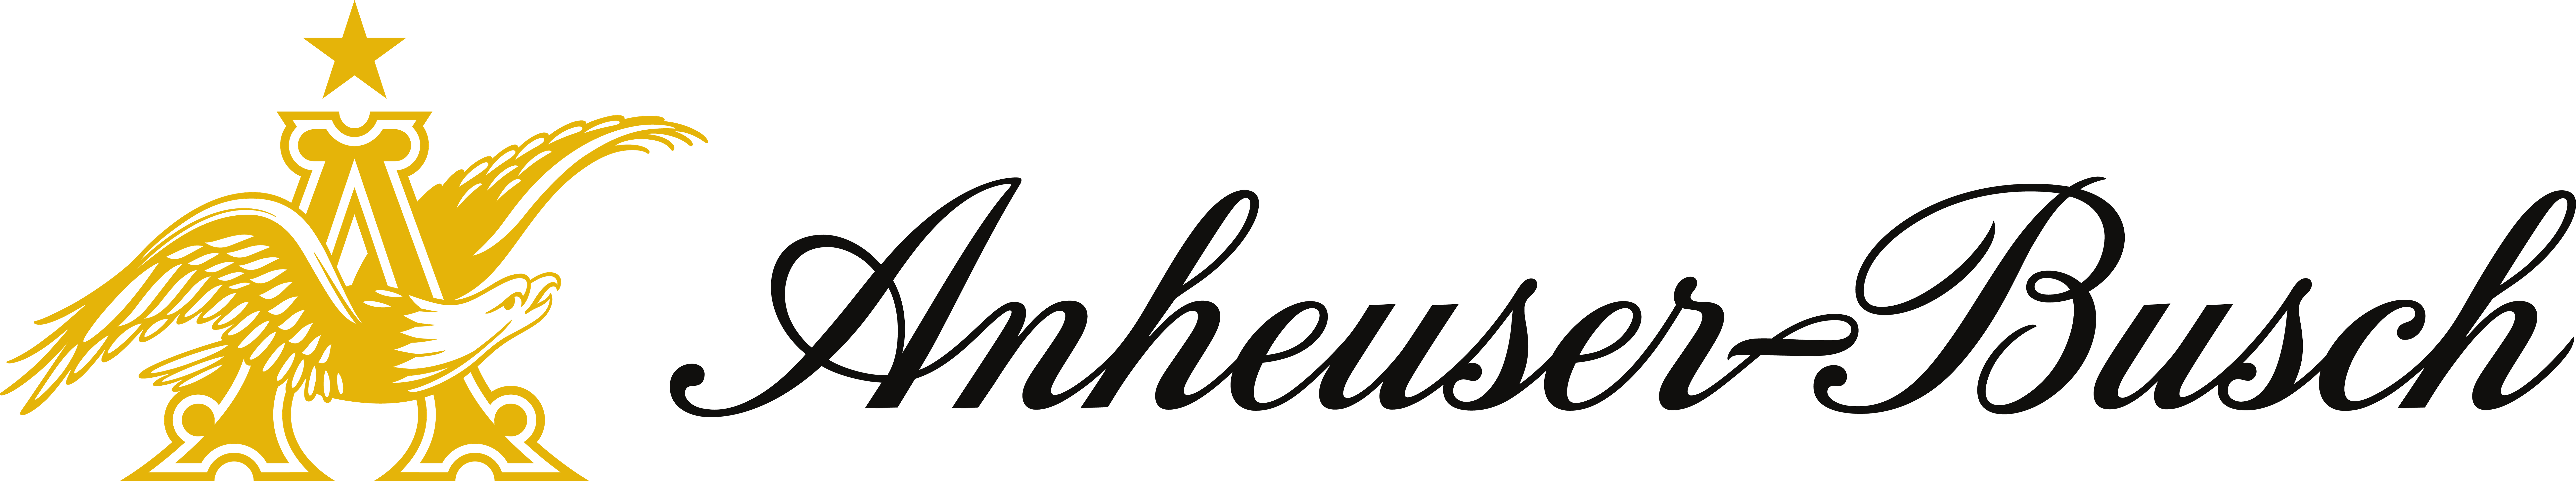 anheuser-busch-logo